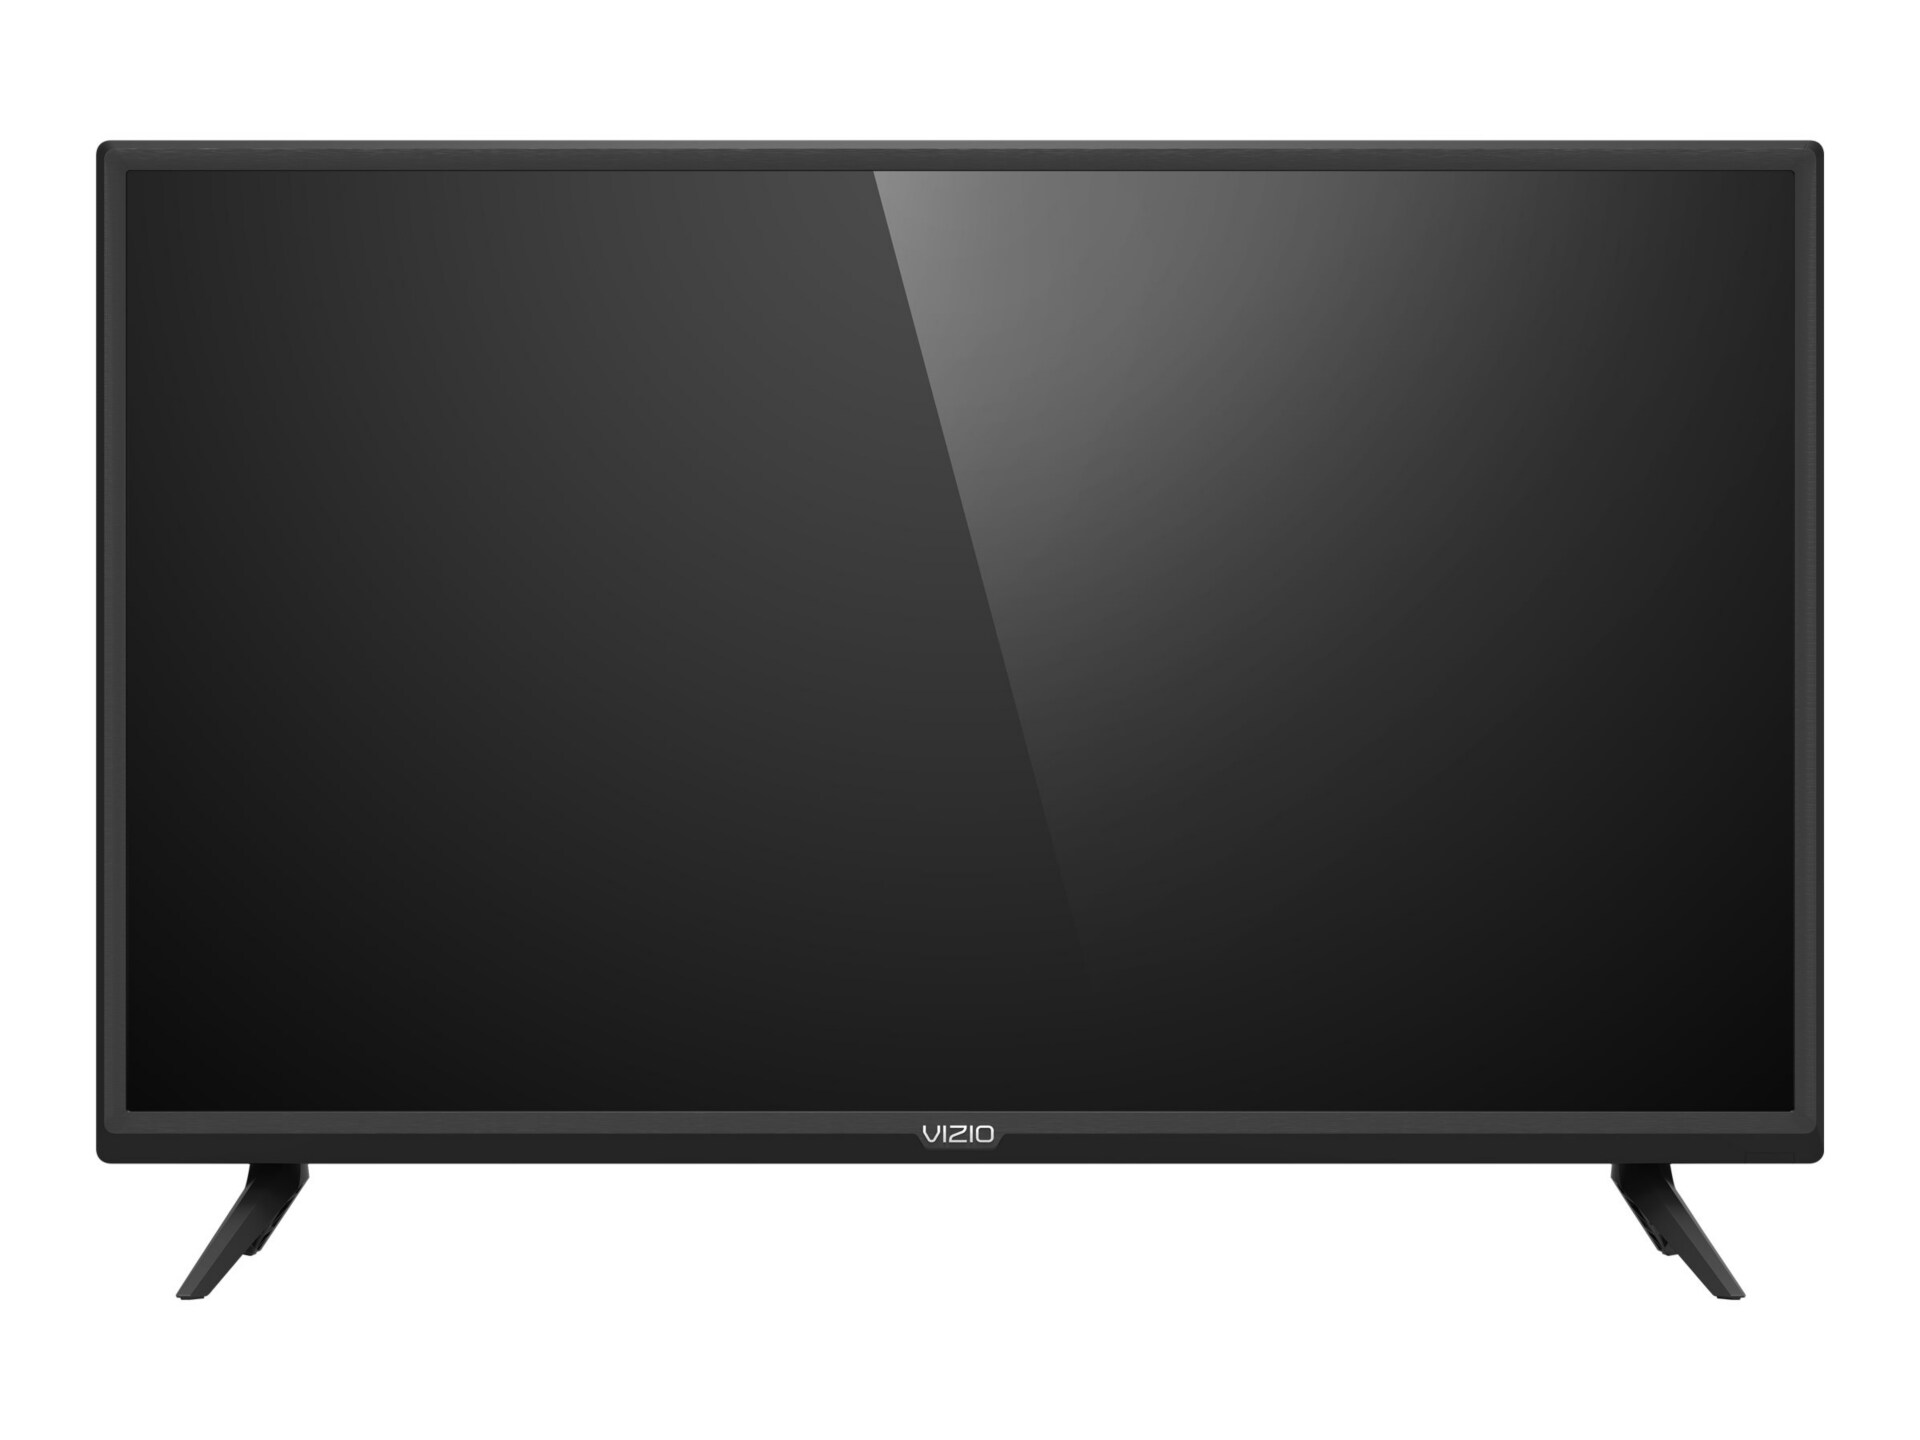 VIZIO D32H-G9 32" Class (31.5" viewable) LED TV